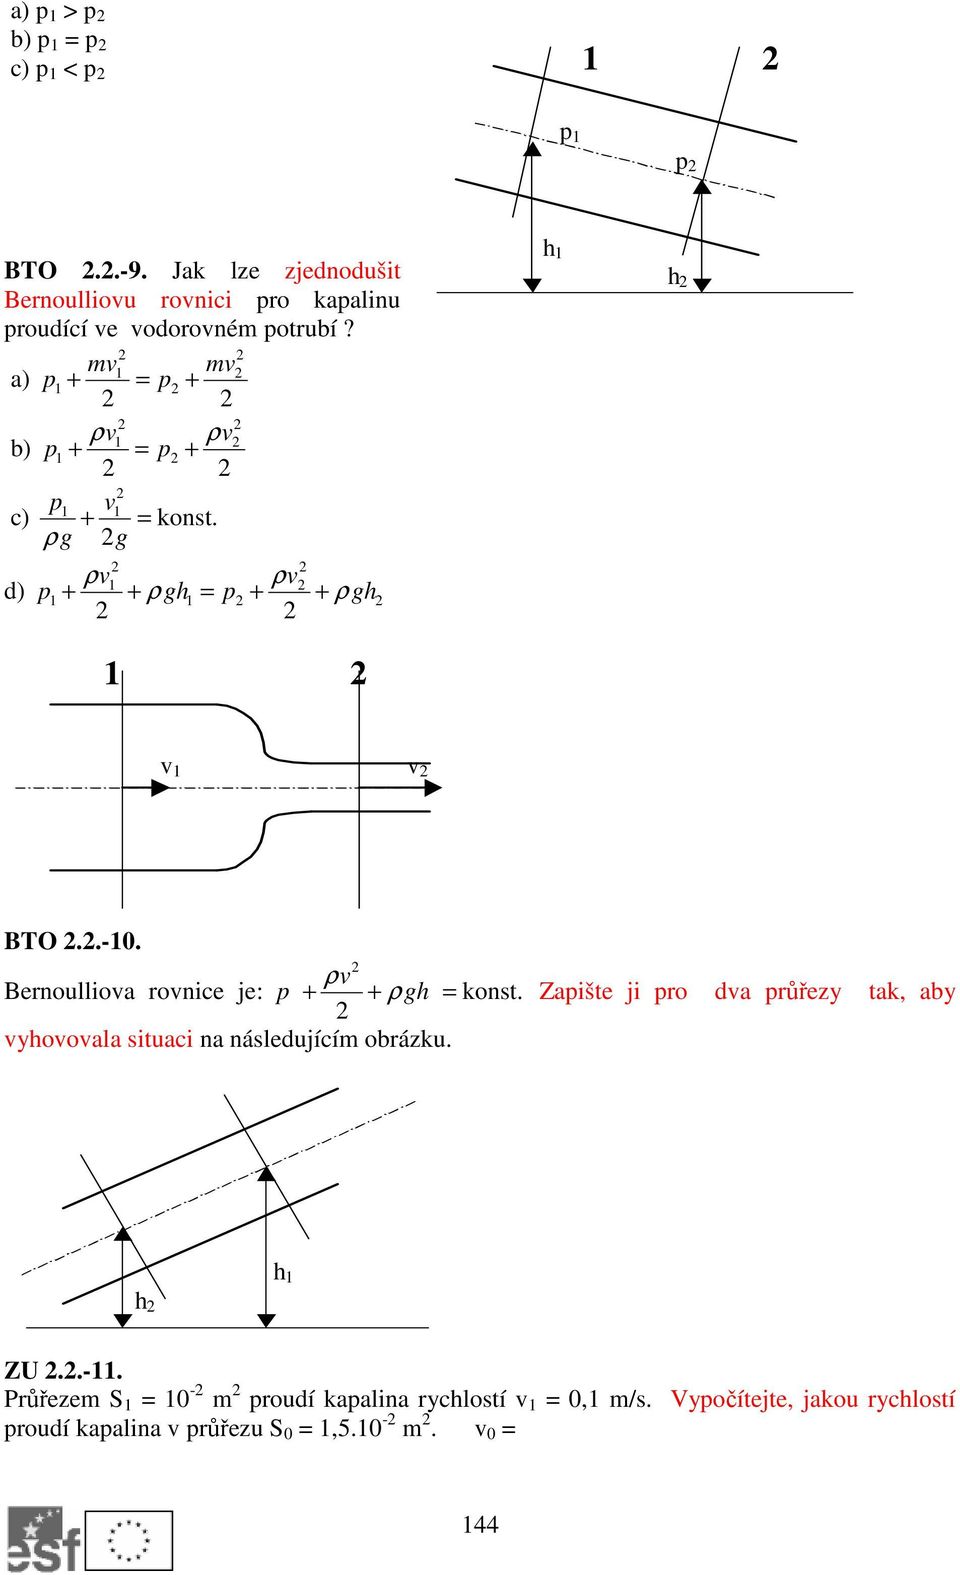 Bernoulliova rovnice je: p ρv + + ρgh = konst. Zapište ji pro dva průřezy tak, aby vyhovovala situaci na následujícím obrázku.